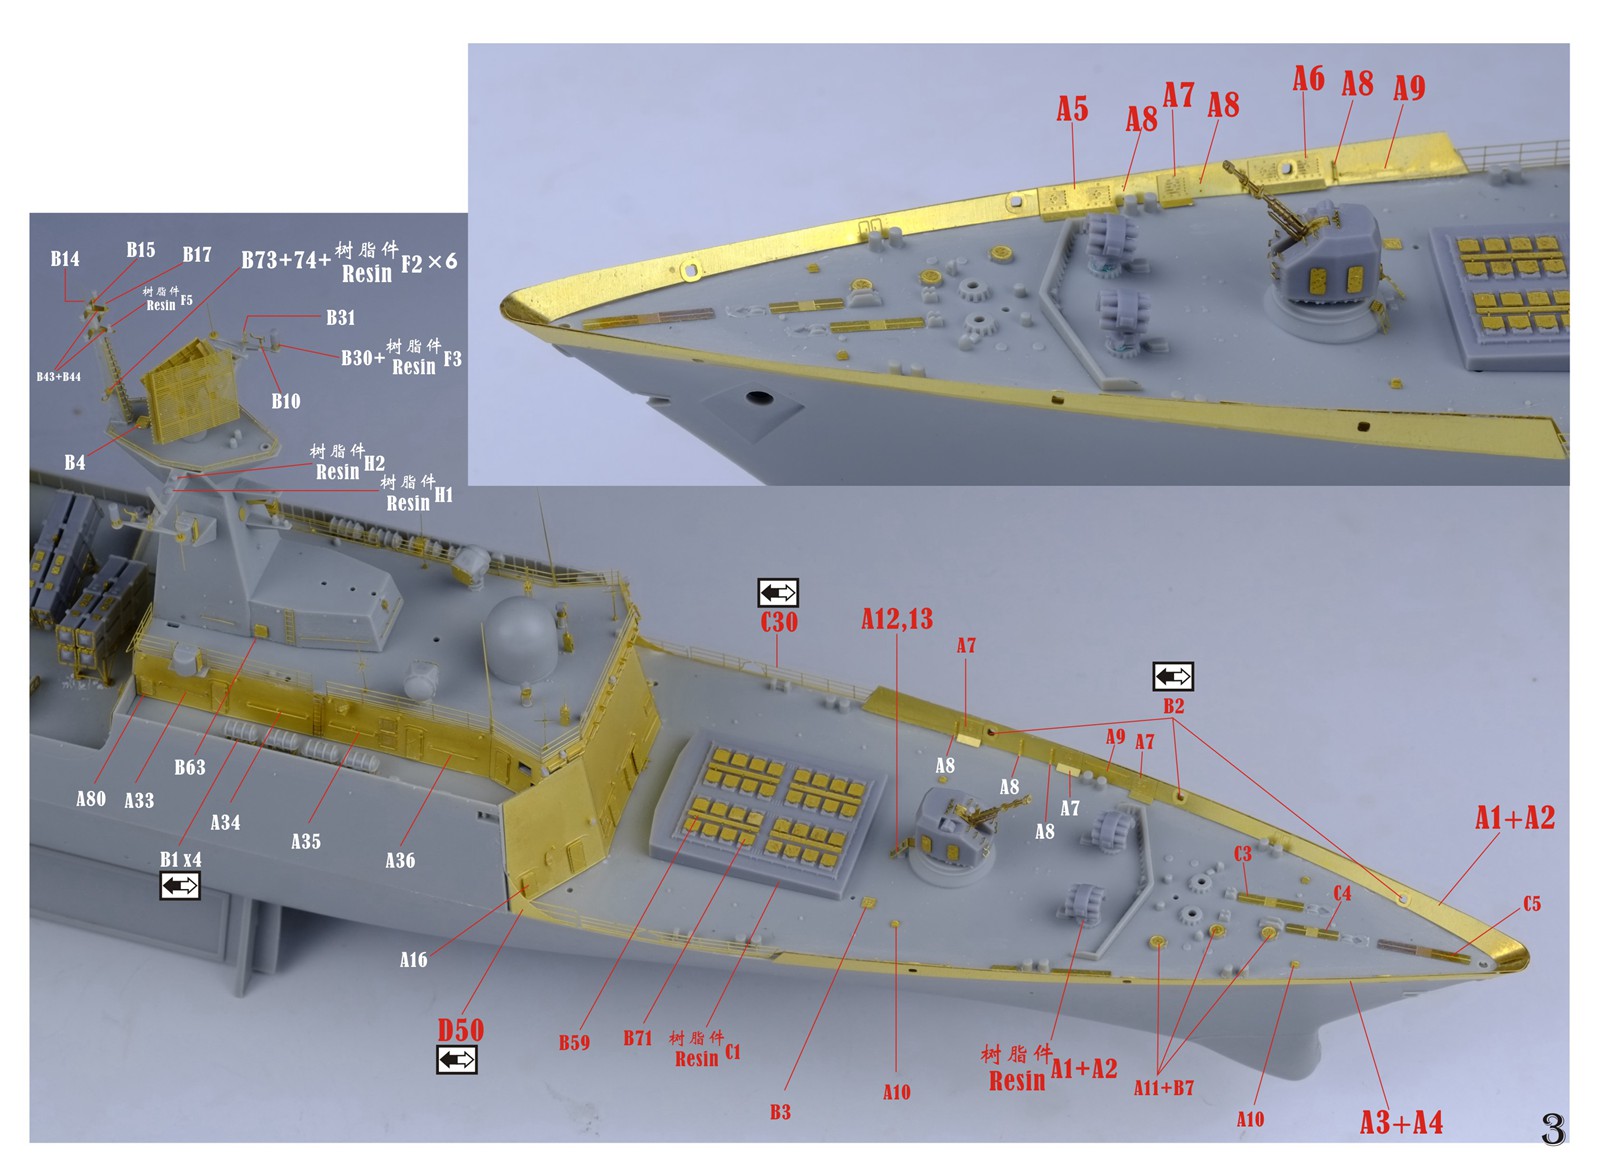 1/350 现代中国海军054A型护卫舰超级改造套件(配小号手04543)